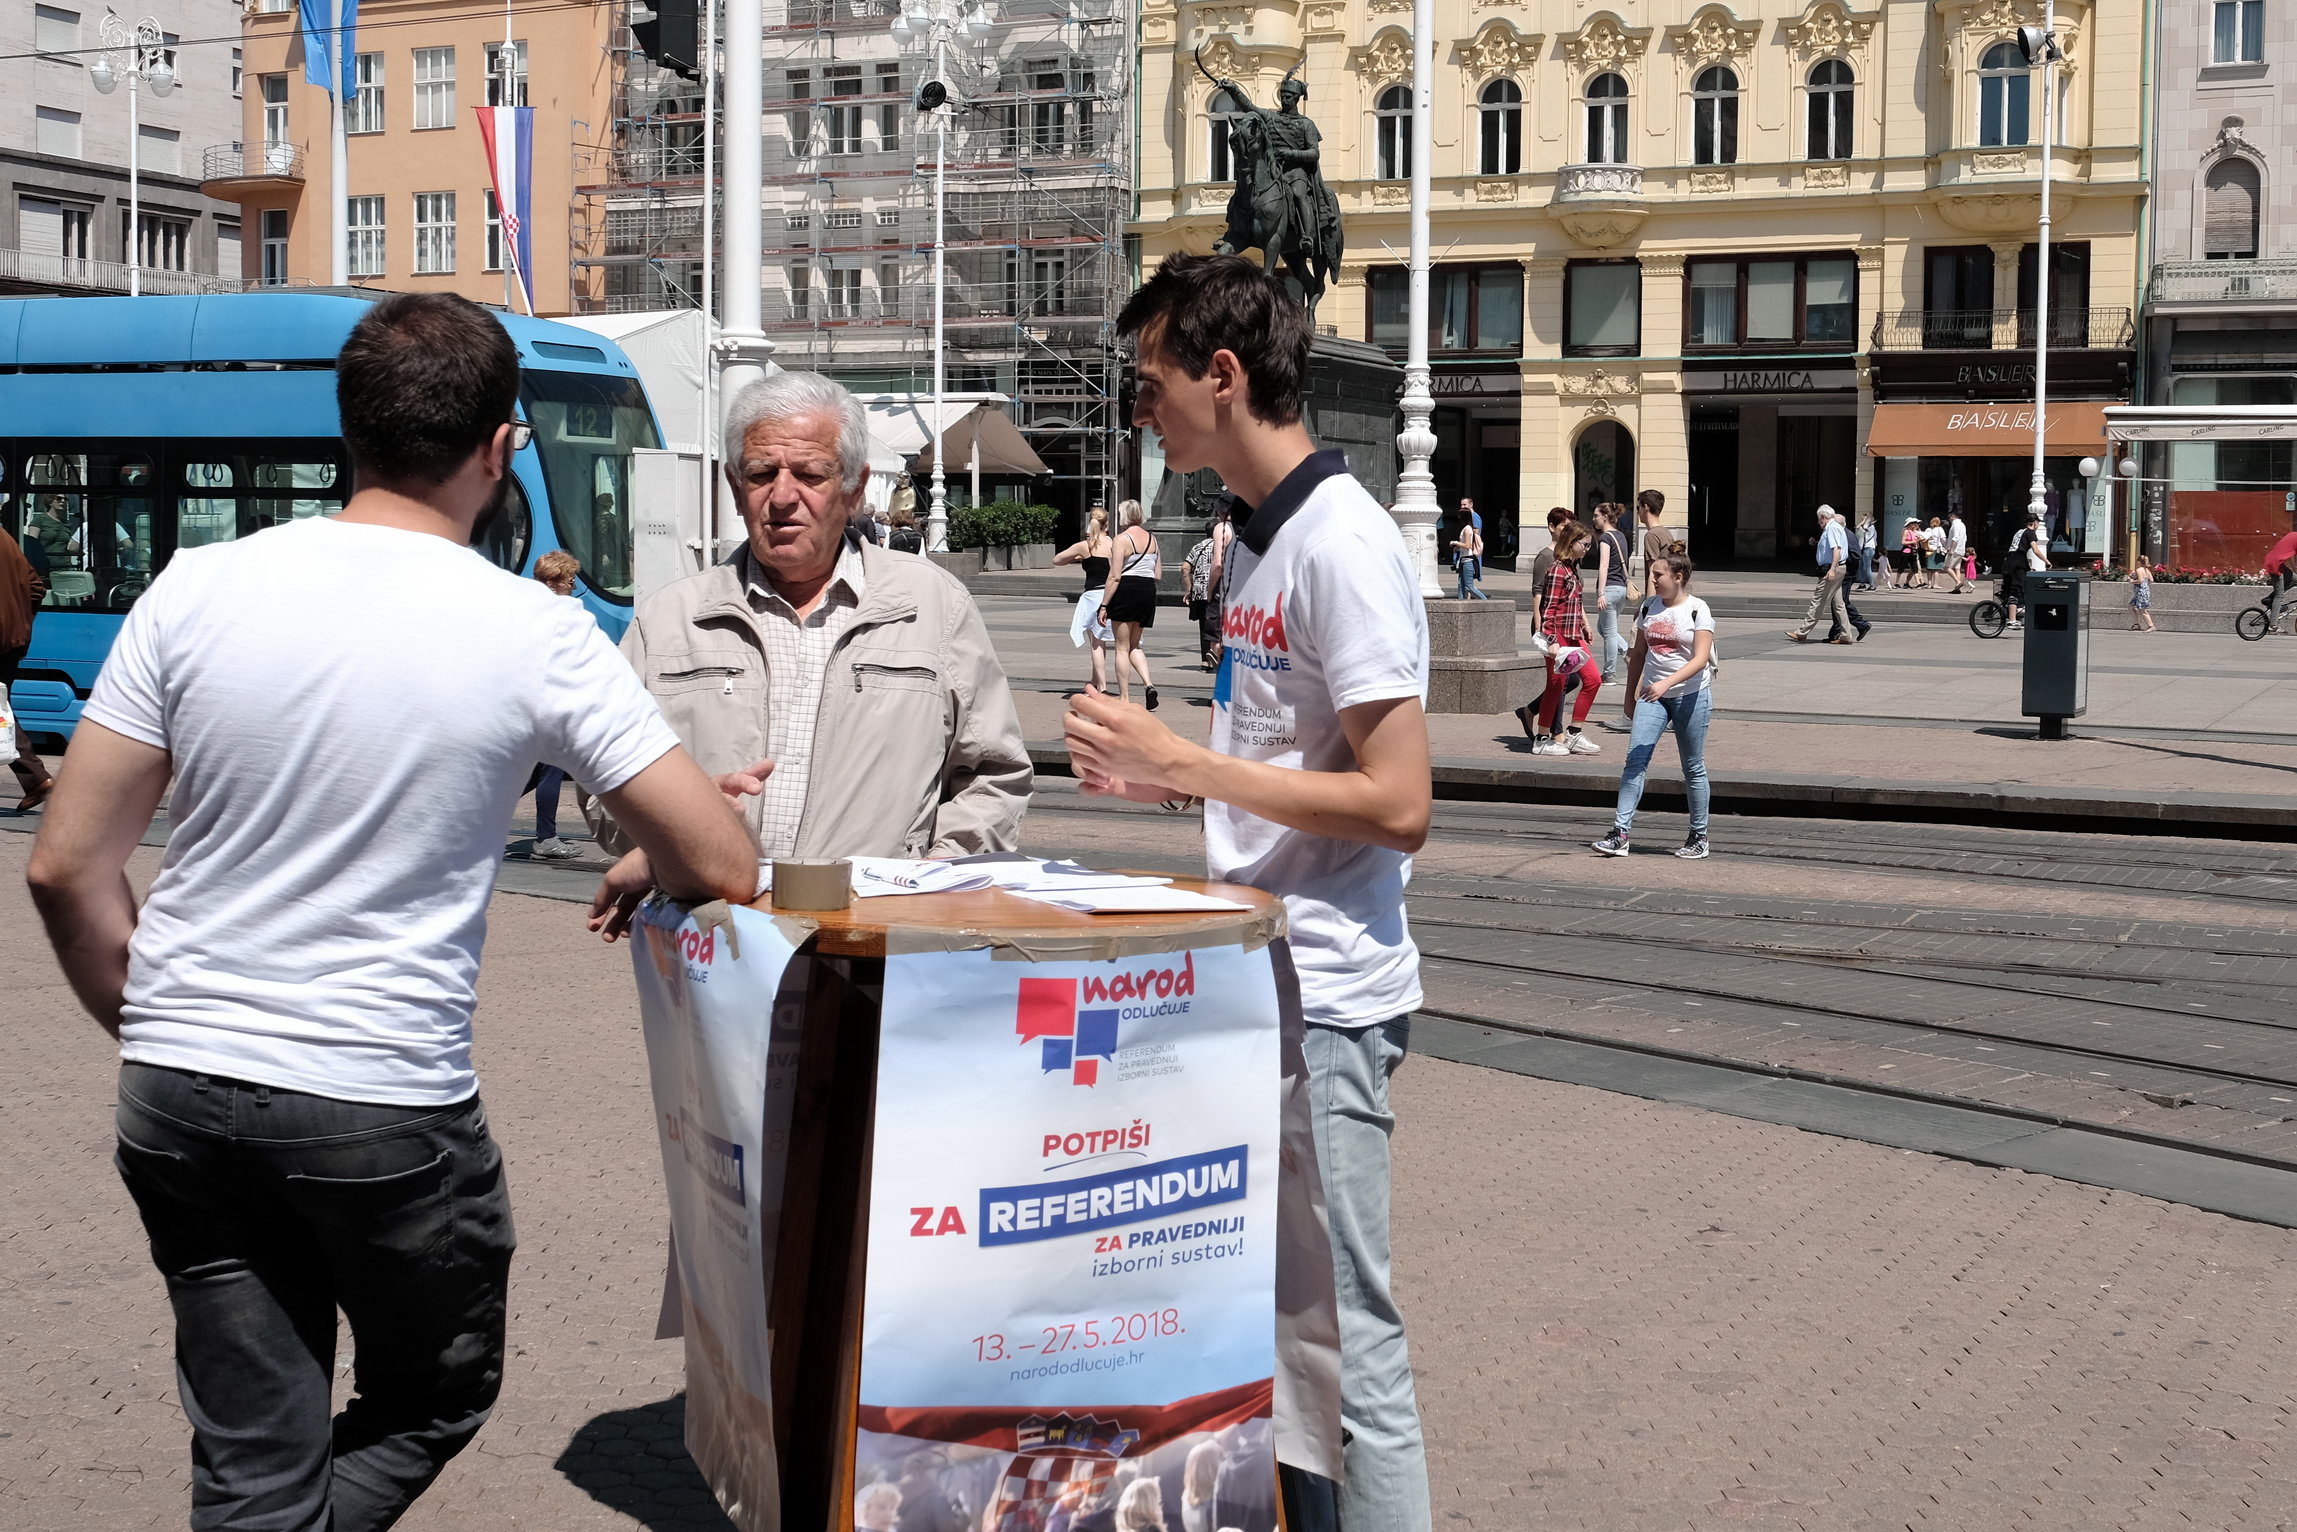 Zagreb, 13.05.2018 - Građanska inicijativa "Narod odlučuje" najavila je kako izjašnjavanje o referendumu za pravedniji izborni sustav počinje u nedjelju, 13. svibnja, a birači će svojim potpisom moći zatražiti raspisivanje referenduma do nedjelje, 27. svibnja.
foto HINA/ Edvard ŠUŠAK/ es